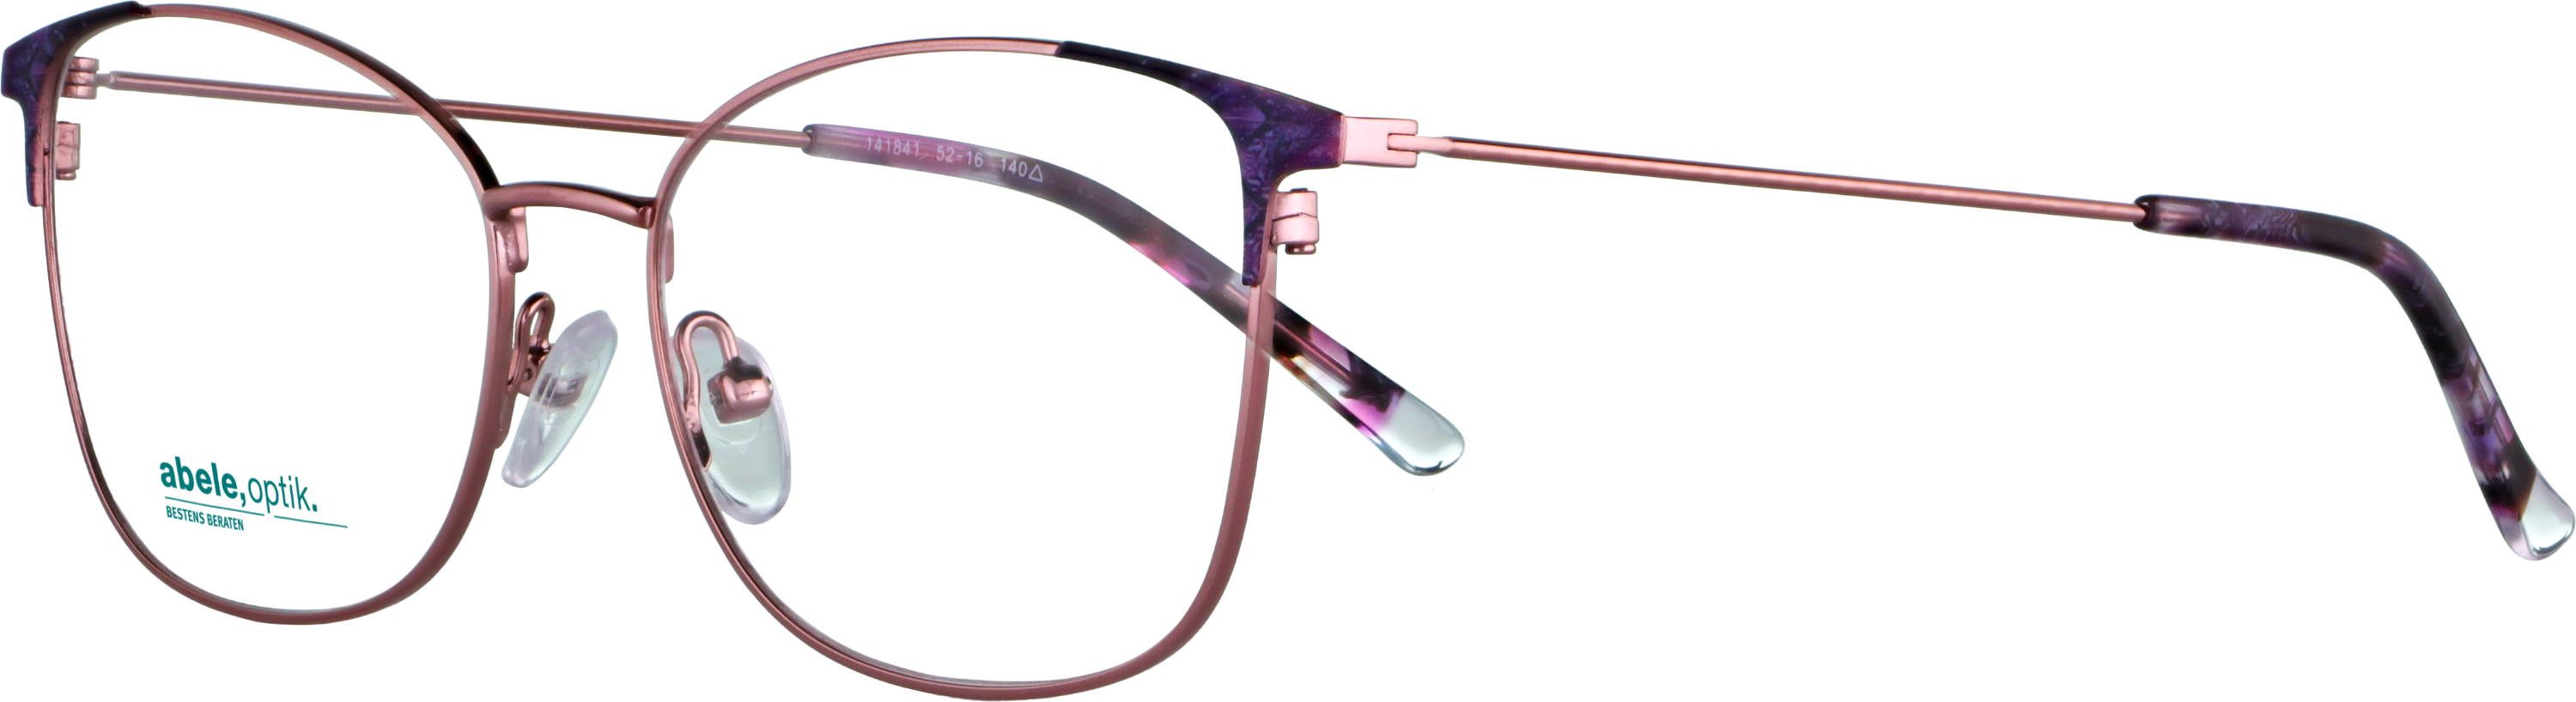 Das Bild zeigt die Korrektionsbrille 141841 von der Marke Abele Optik in rosa / lila.